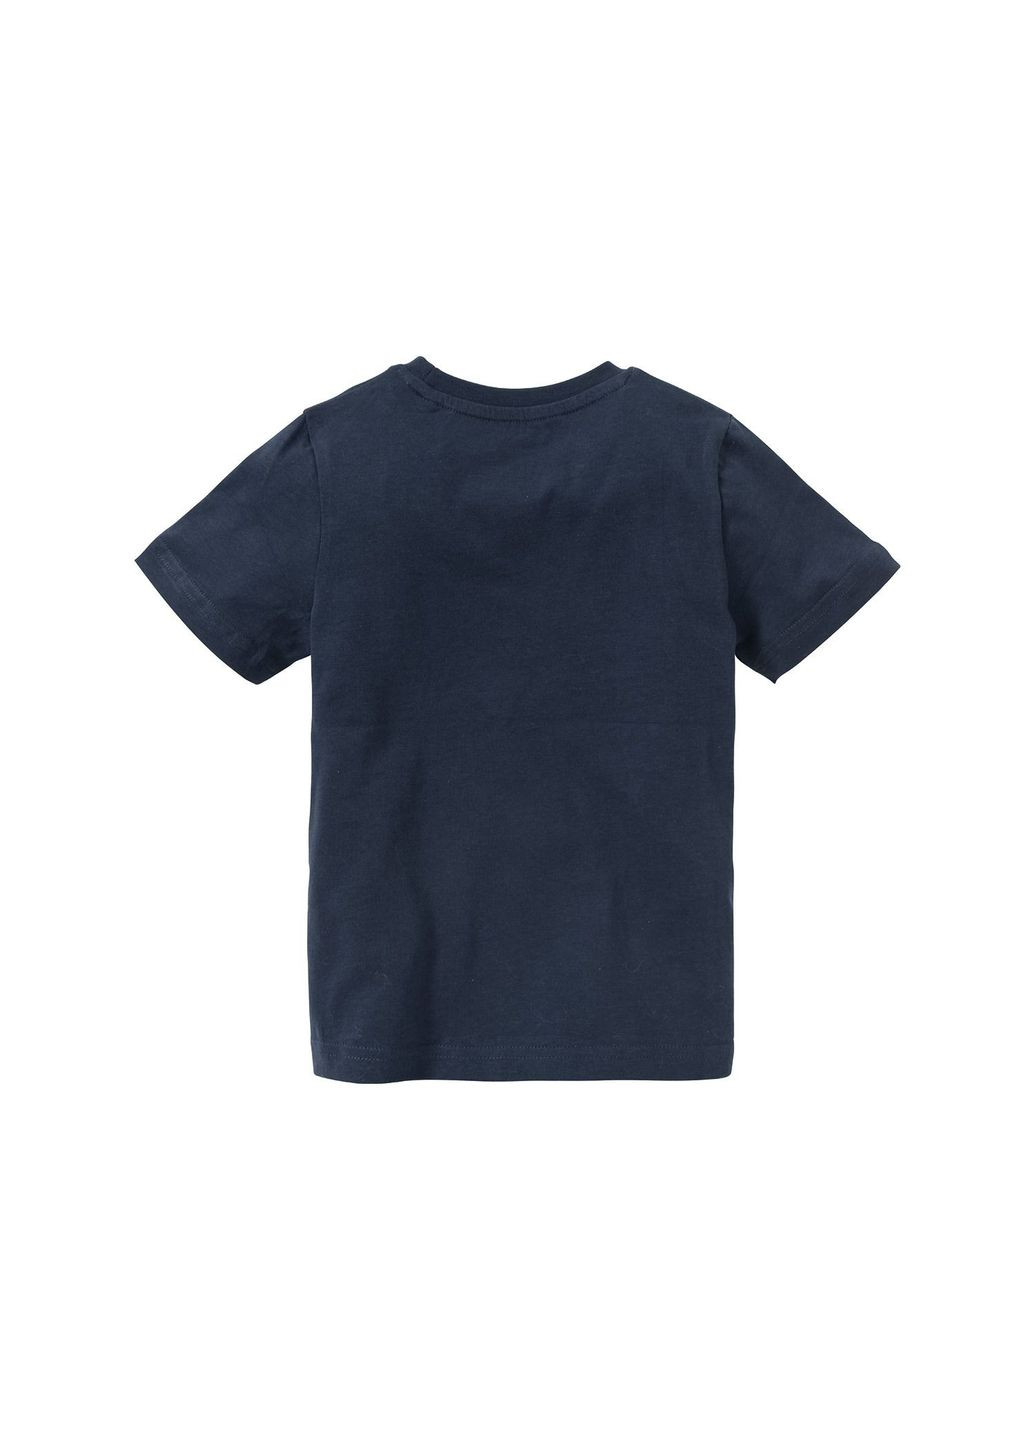 Темно-синя демісезонна футболка бавовняна для хлопчика 396769 темно-синій Lupilu